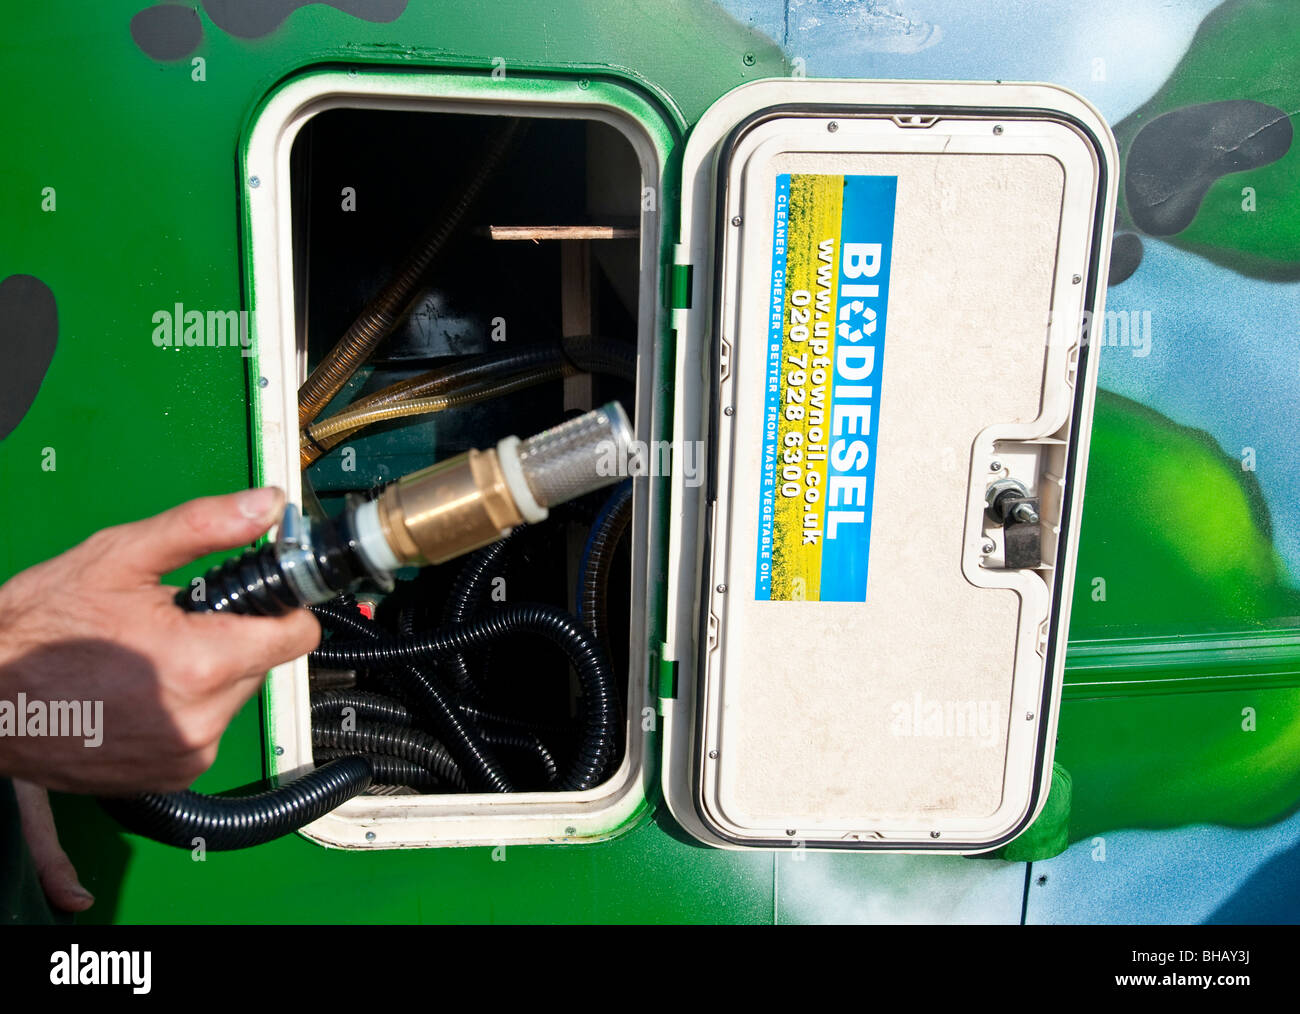 Biodiesel-van Stockfoto